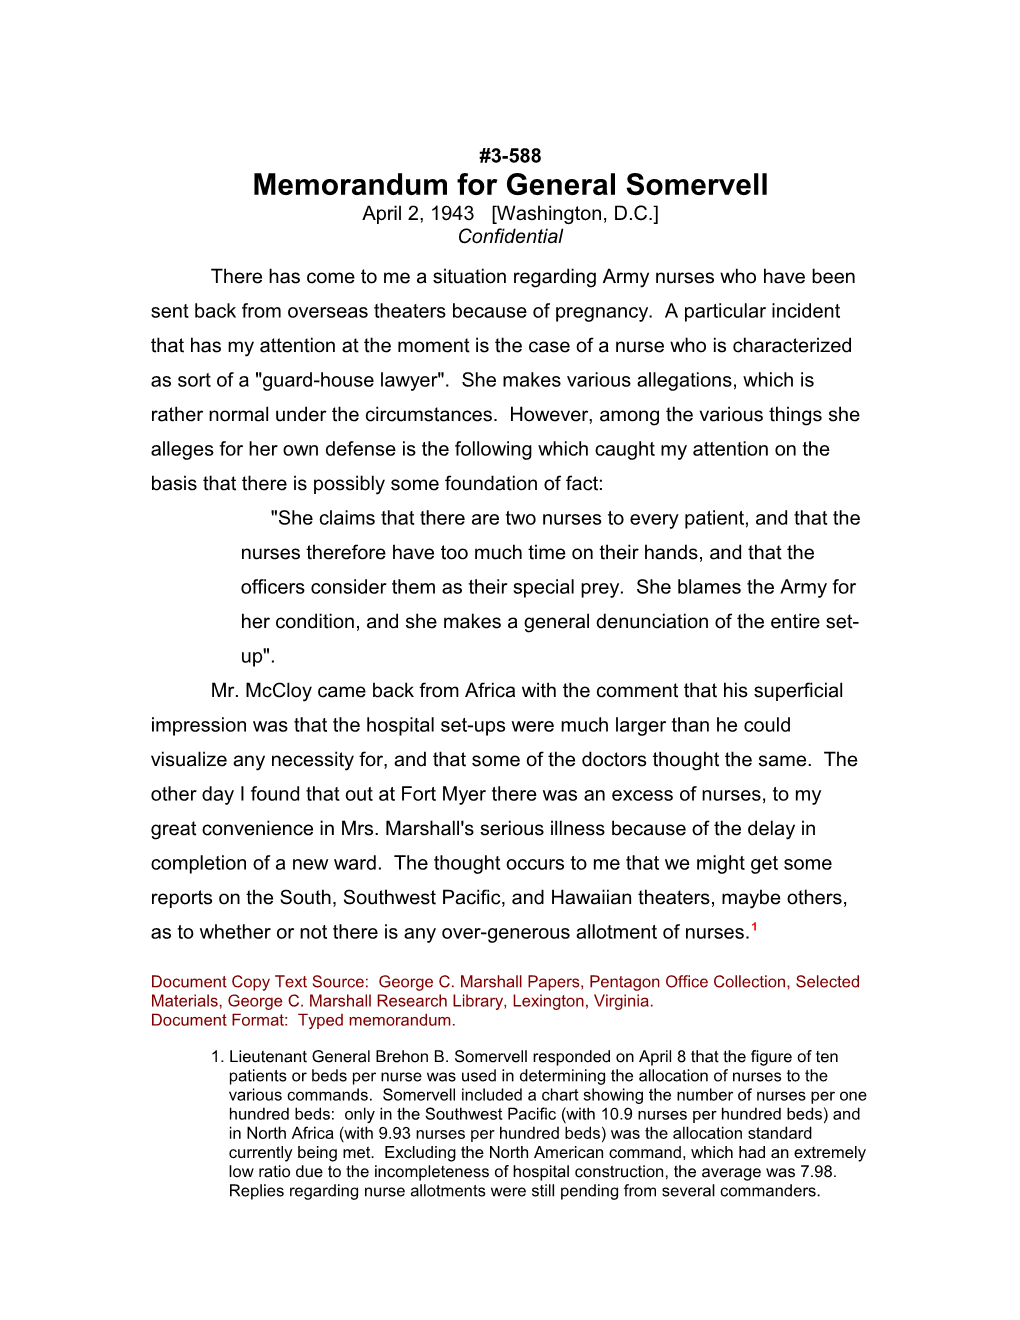 Memorandum for General Somervell